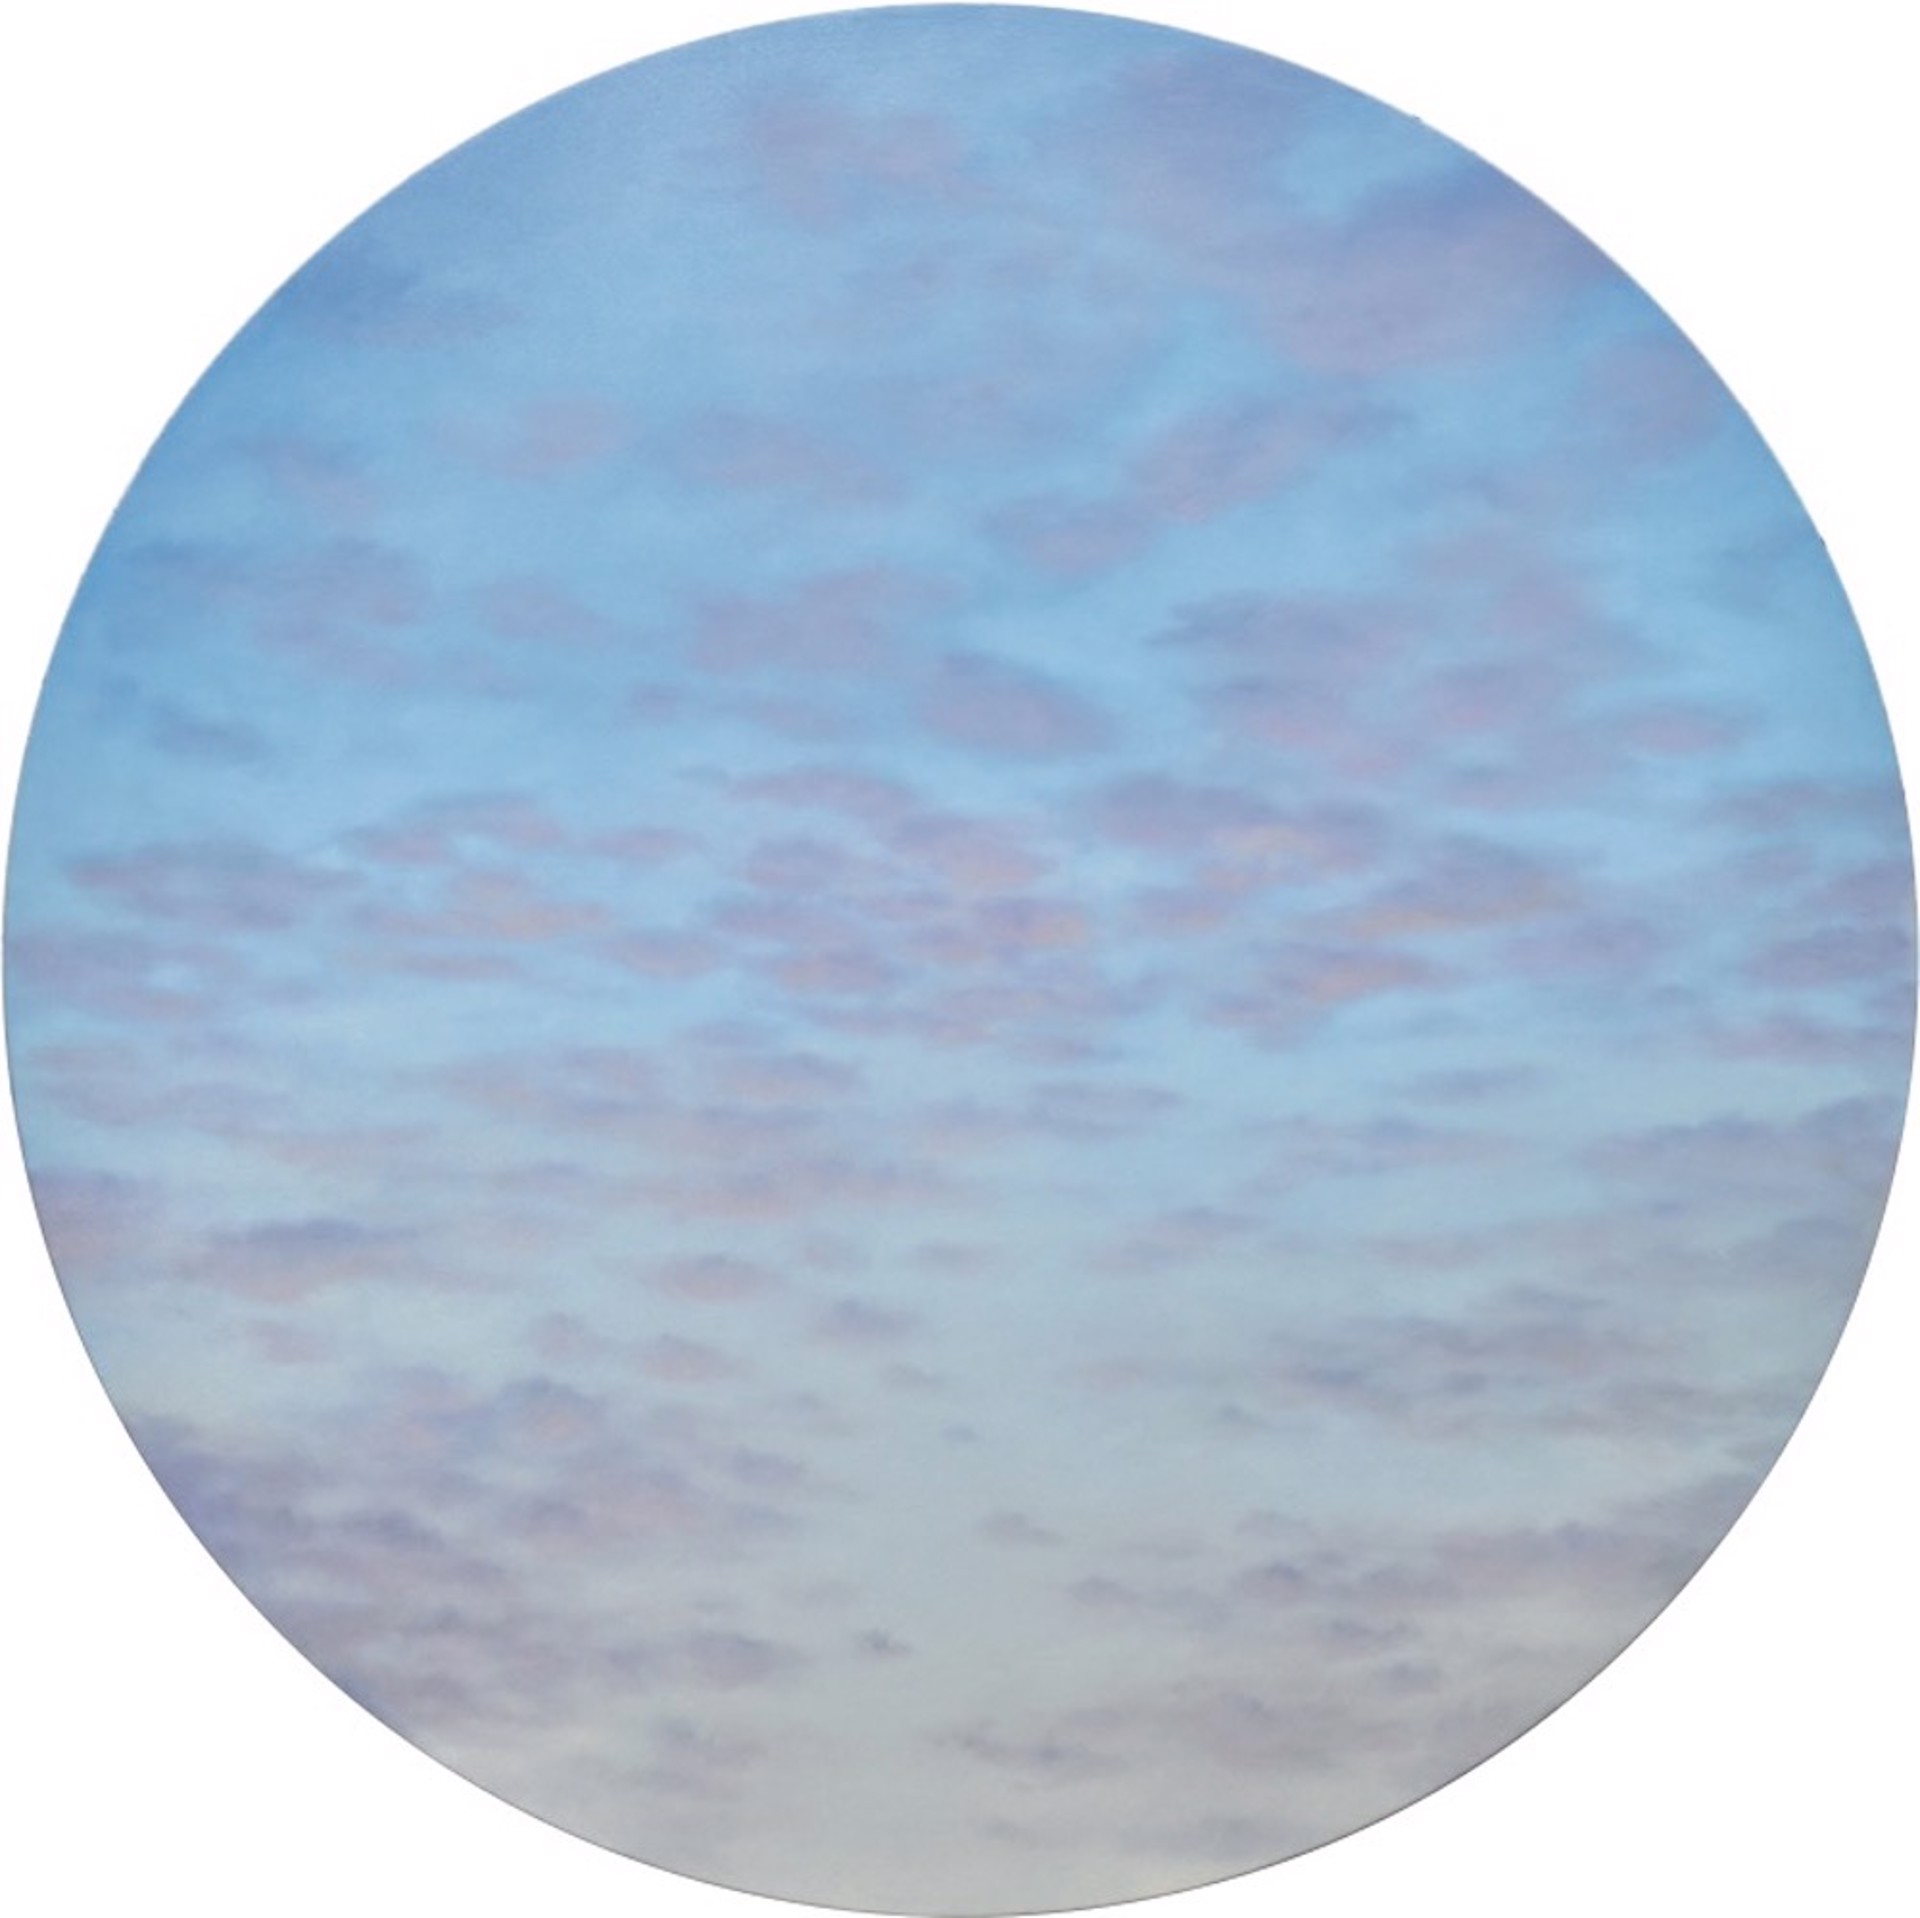 Dappled Sky II by Willard Dixon